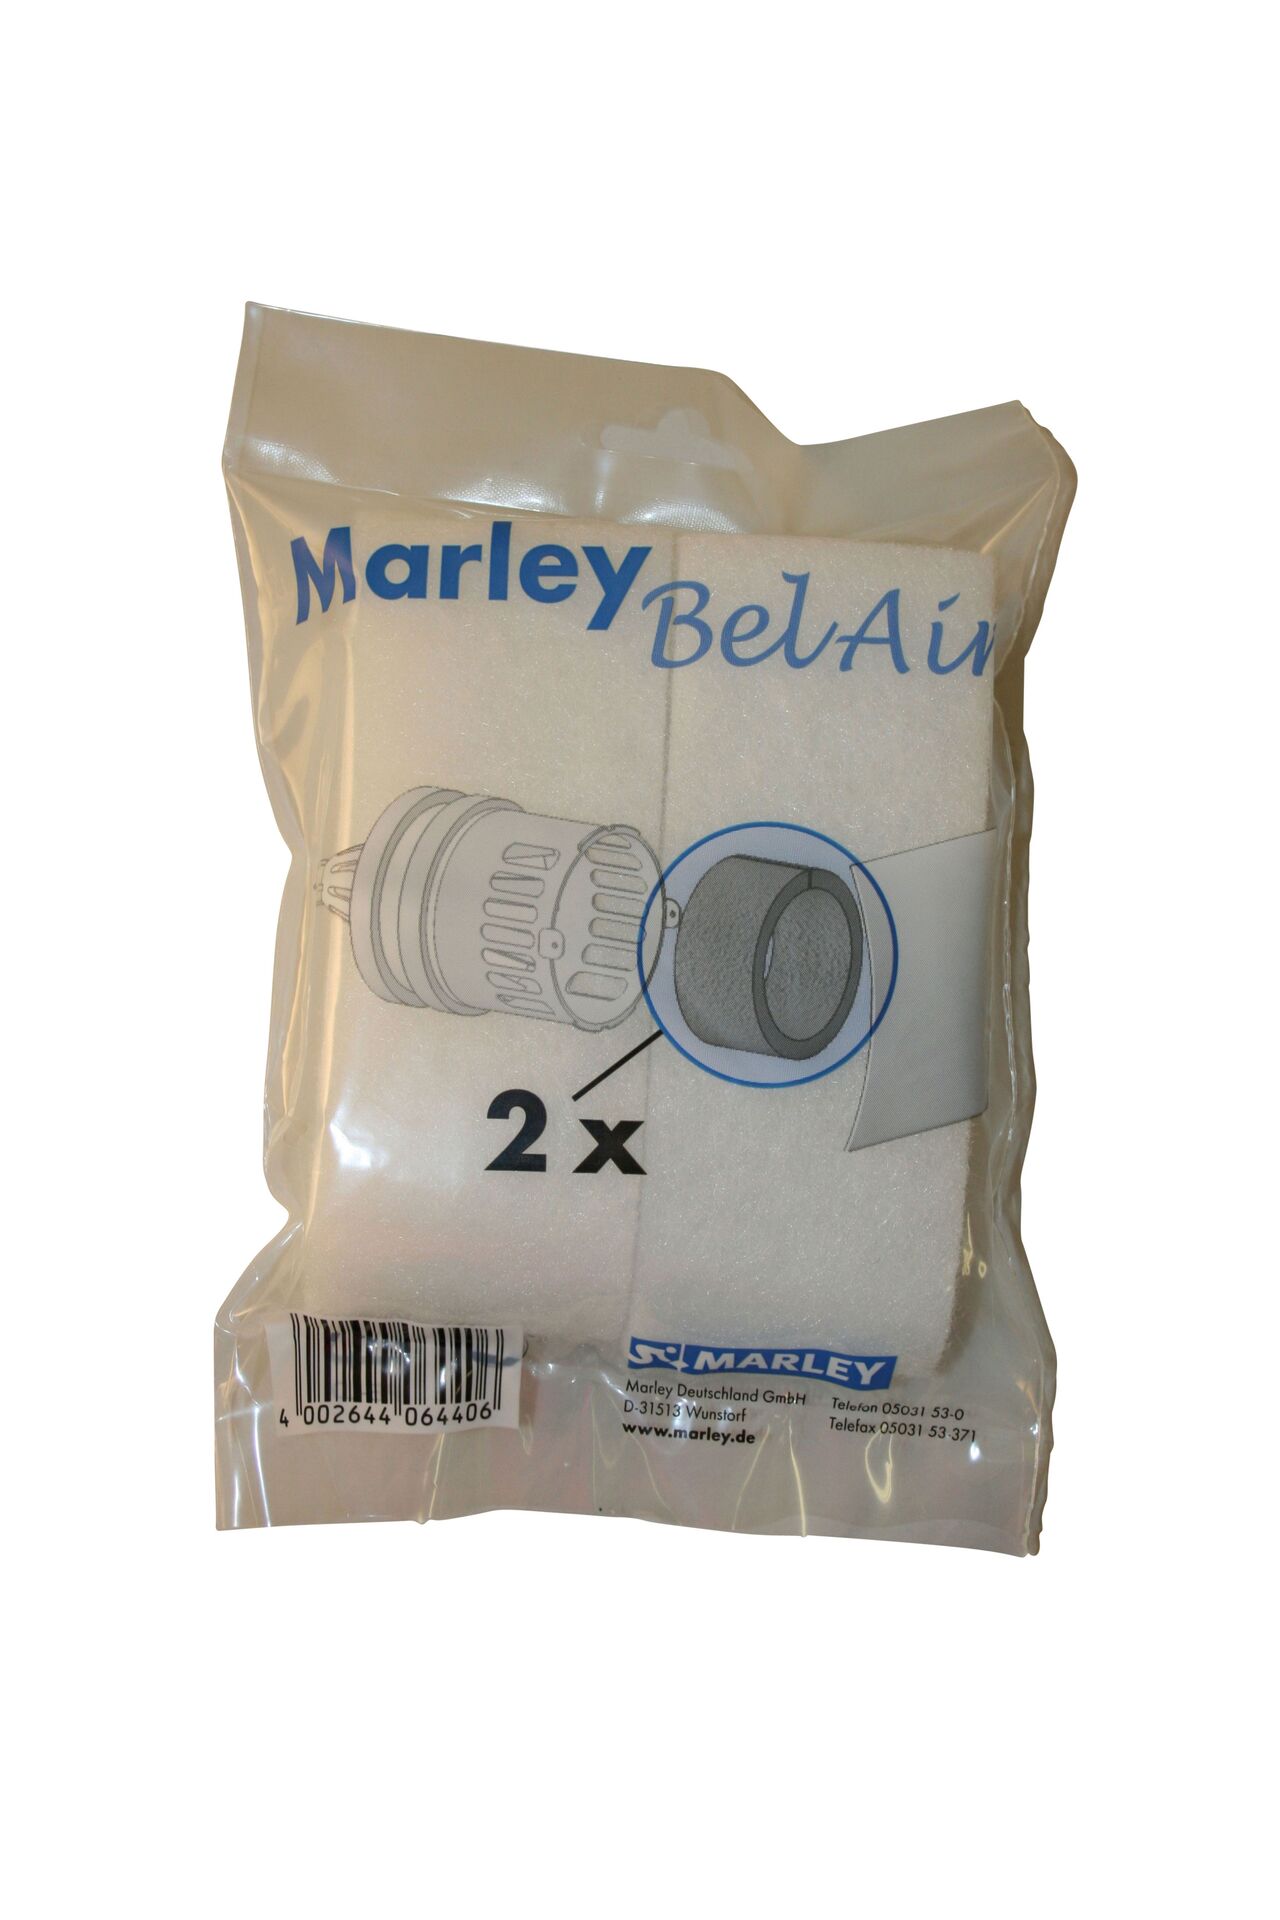 Marley Deutschland GmbH Zuluftkanal mit Pollenschutz